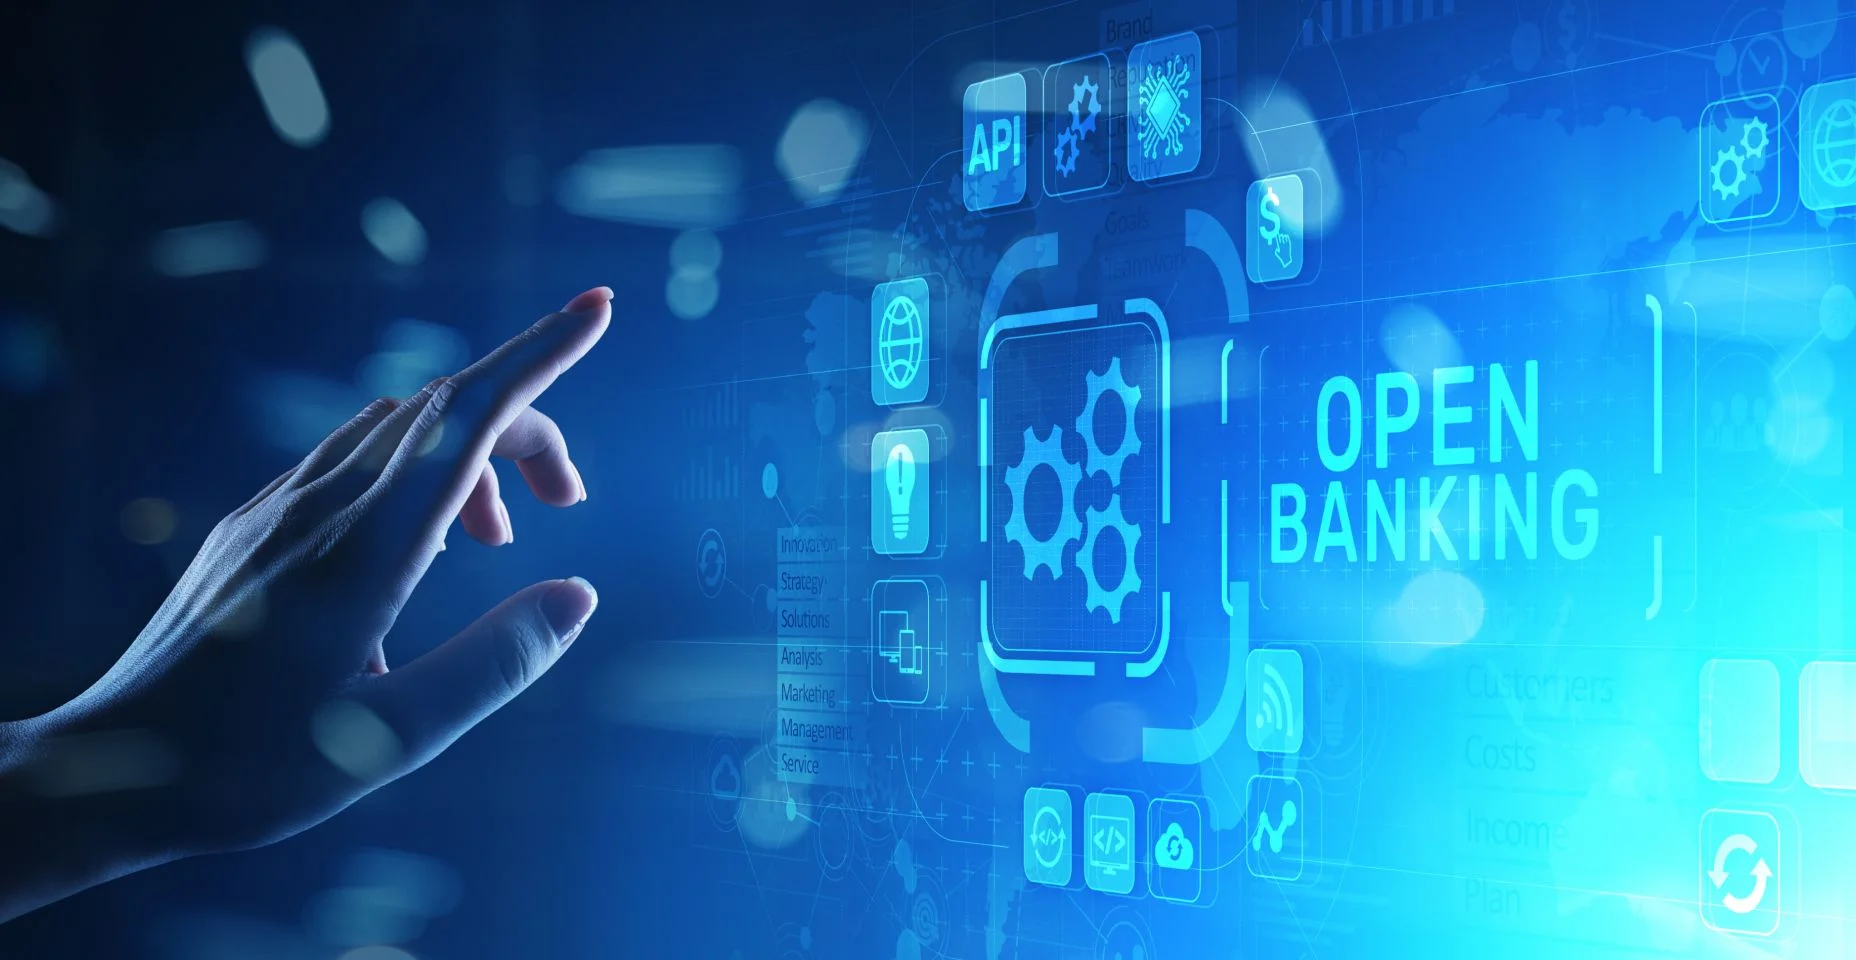 Conceito de fintech de tecnologia financeira bancária aberta na tela virtual.